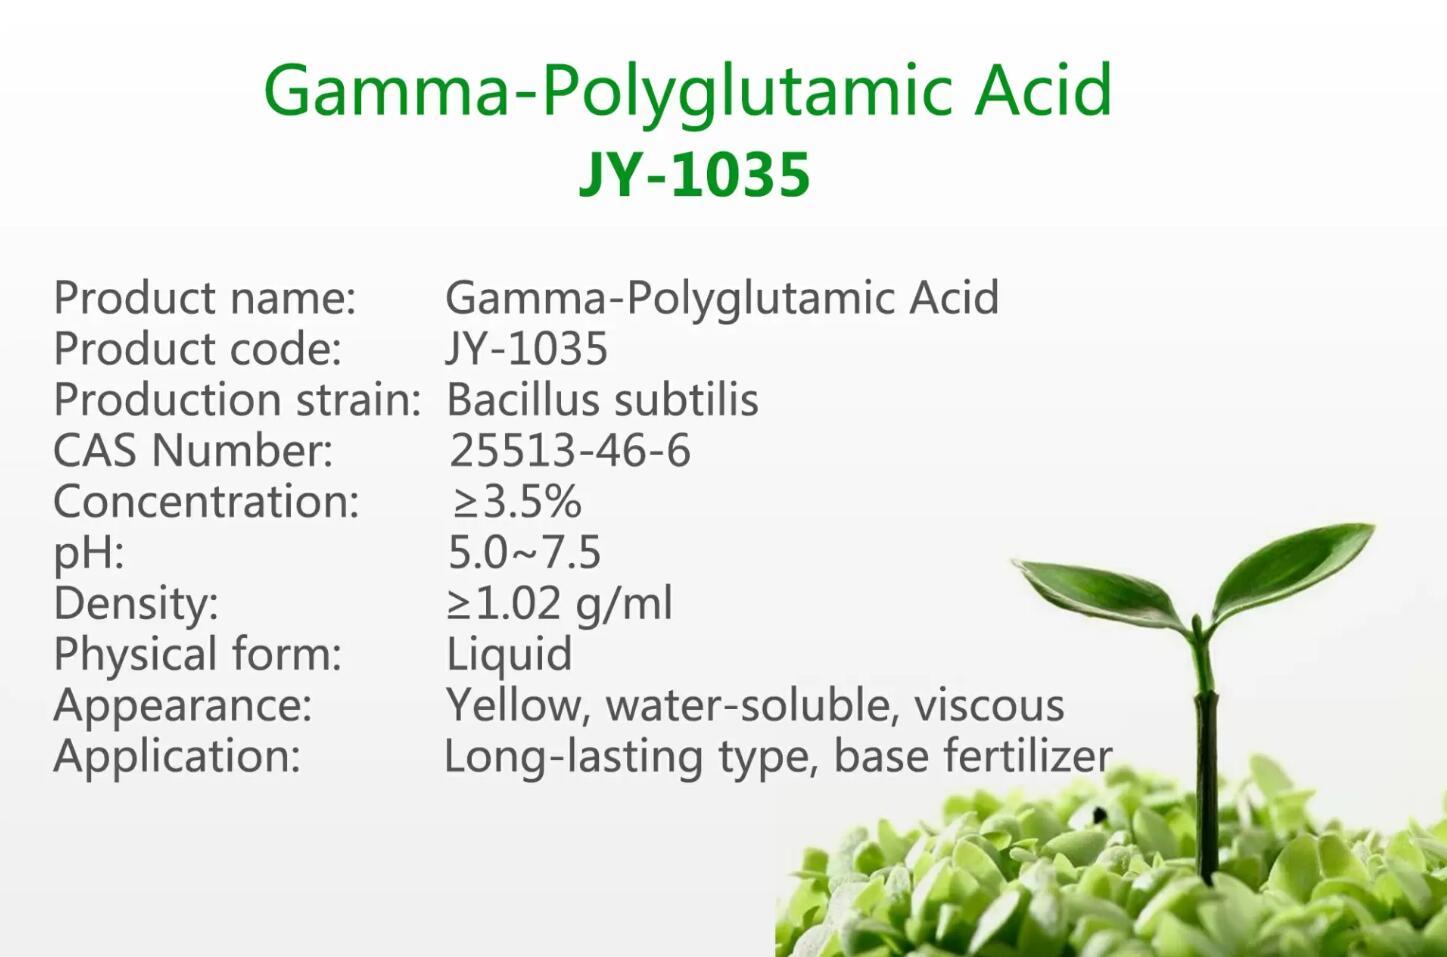 γ-Polyglutamic Acid JY-1035